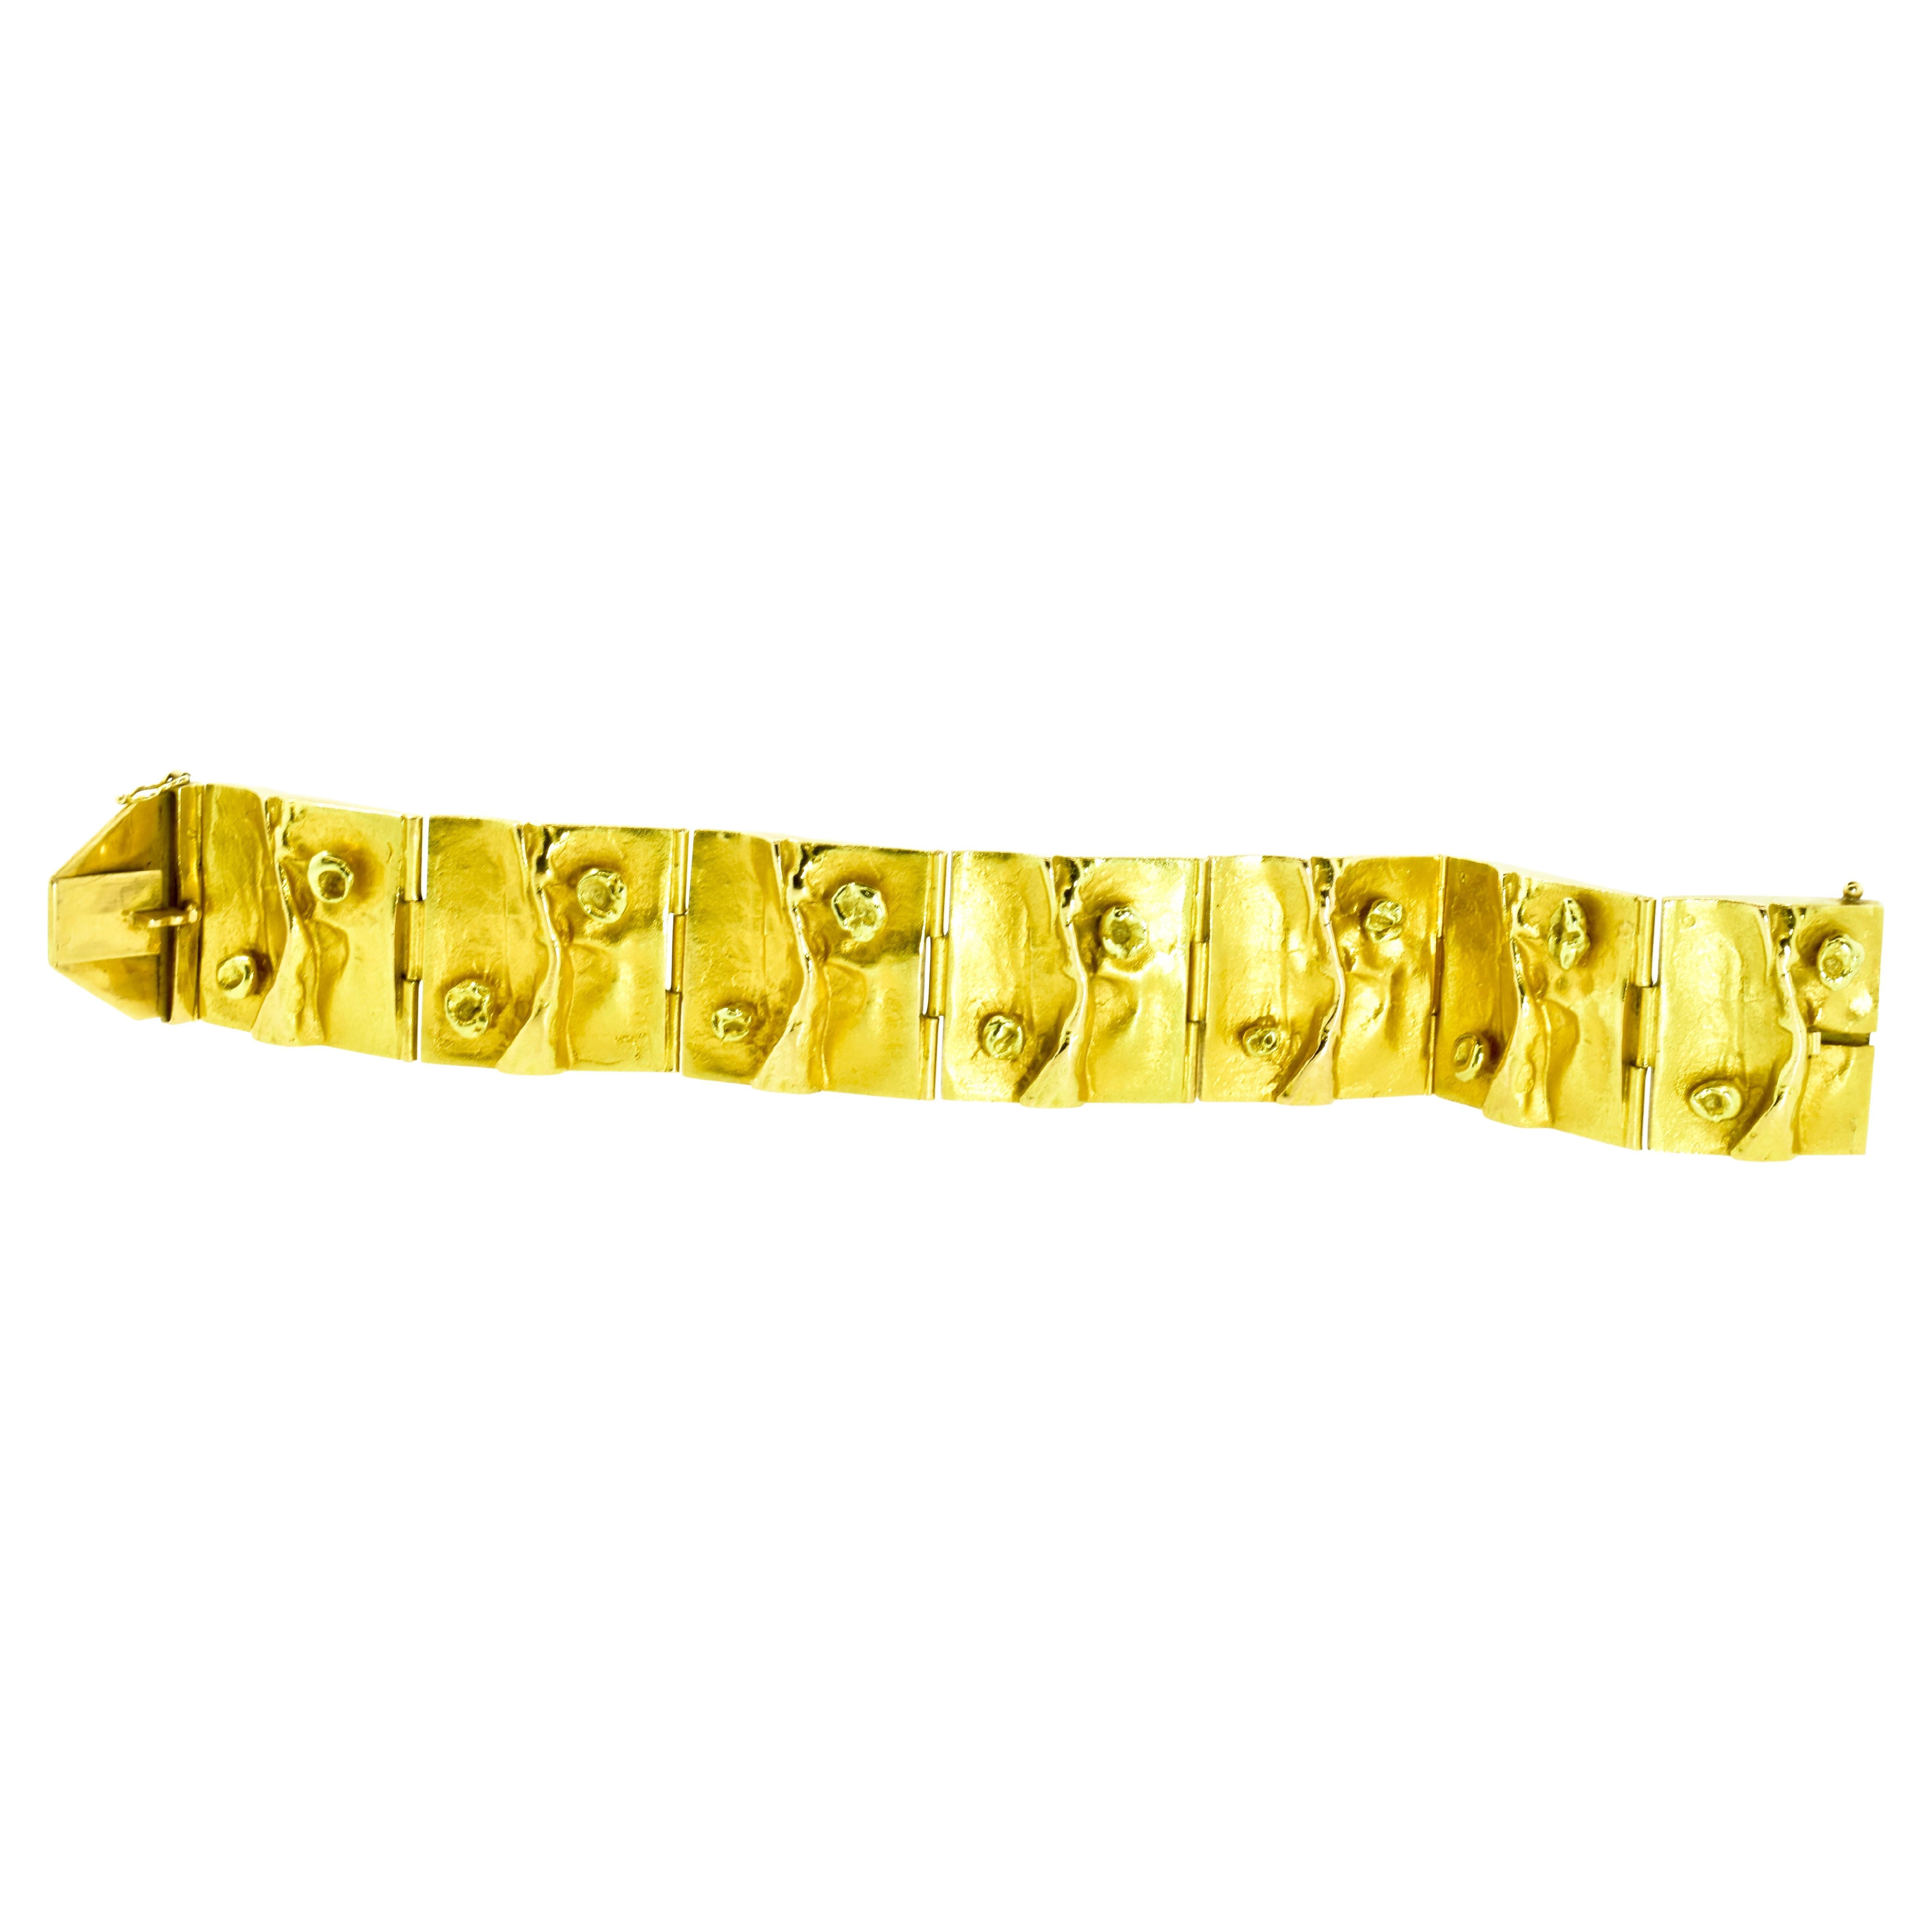 Bjorn Weckstrom 18K Gelbgold modernist Armband.  Dieses handgefertigte Armband wurde von einem der großen finnischen Meisterjuweliere hergestellt. Dieses Armband ist eines seiner berühmtesten Designs.  Eine sehr ähnliche Halskette und ein ähnliches